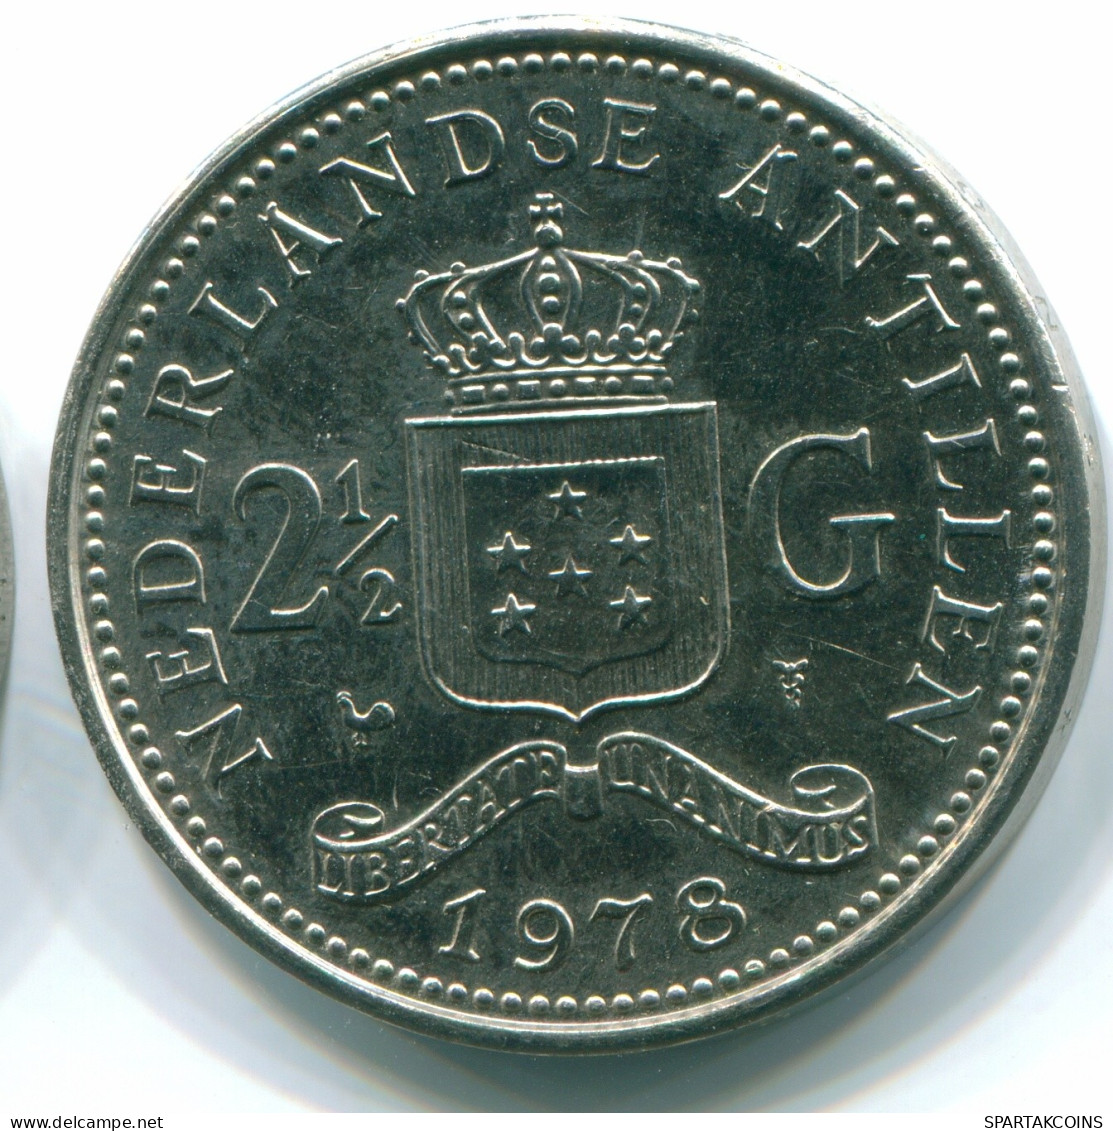 1 GULDEN 1978 ANTILLAS NEERLANDESAS Nickel Colonial Moneda #S12064.E.A - Antillas Neerlandesas